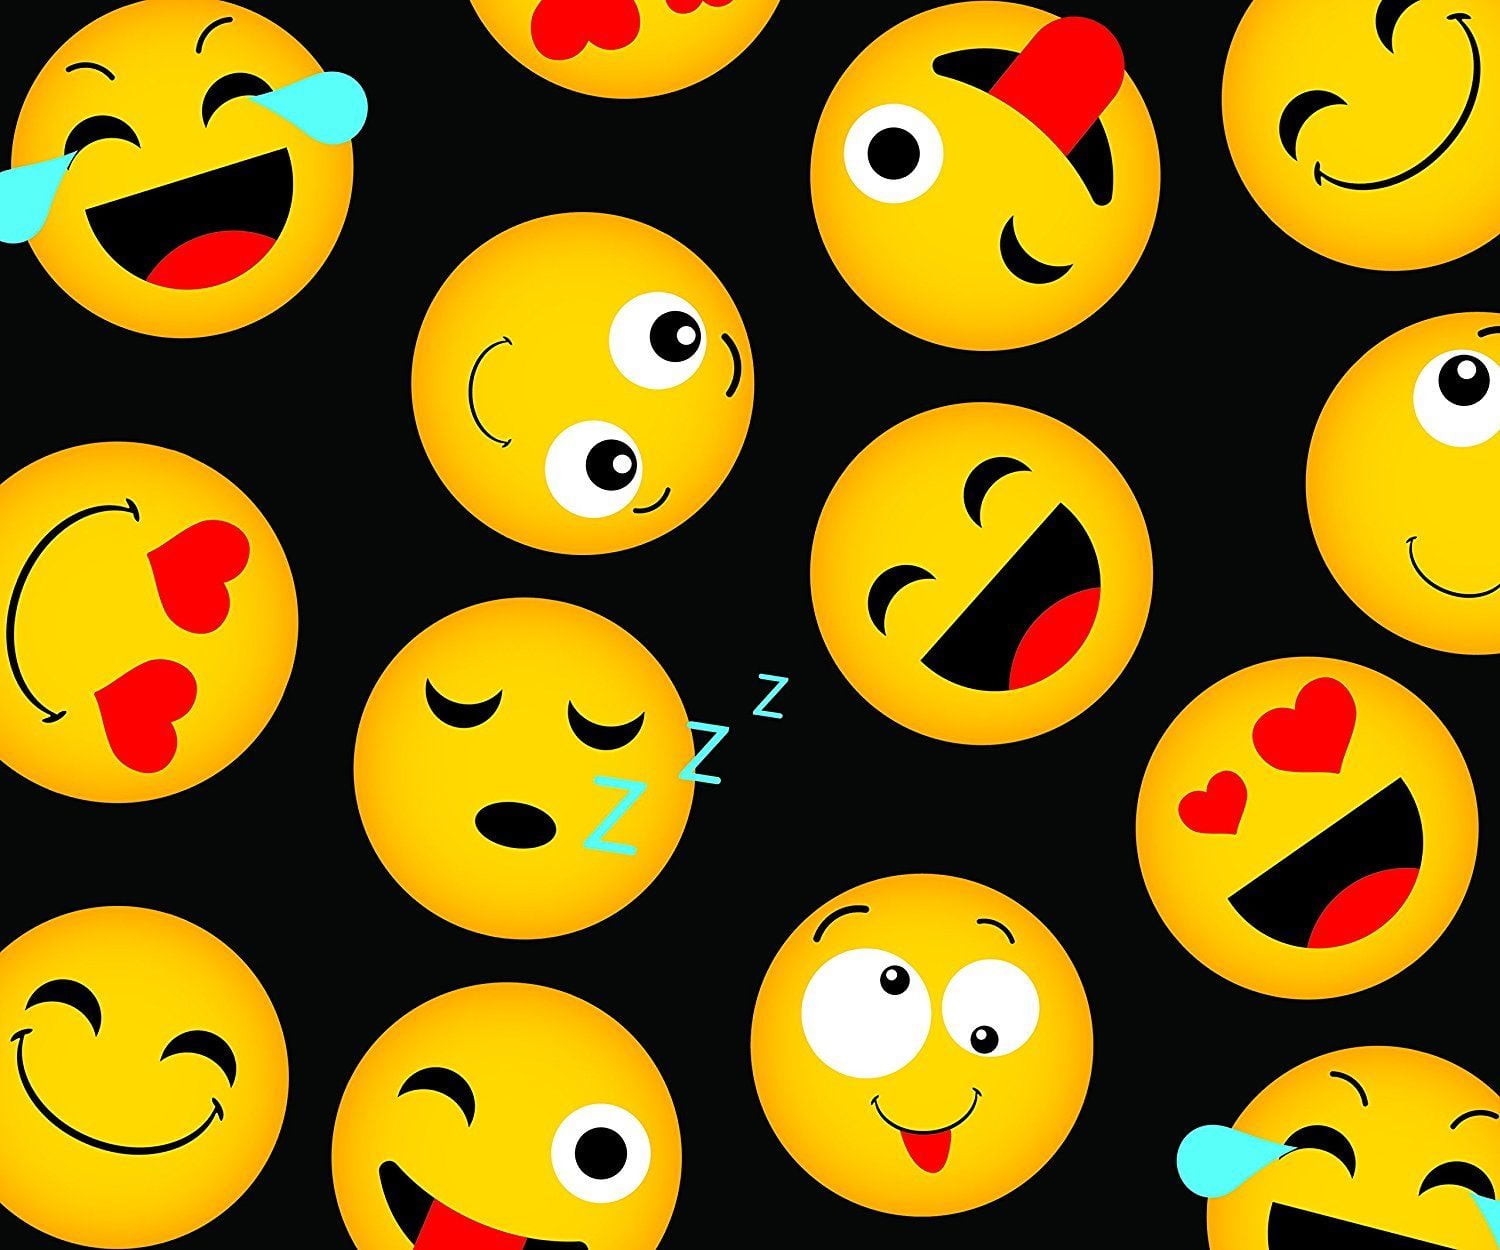 NWT Emoji Plush Lightweight Throw Blanket 50”w x 60” L 